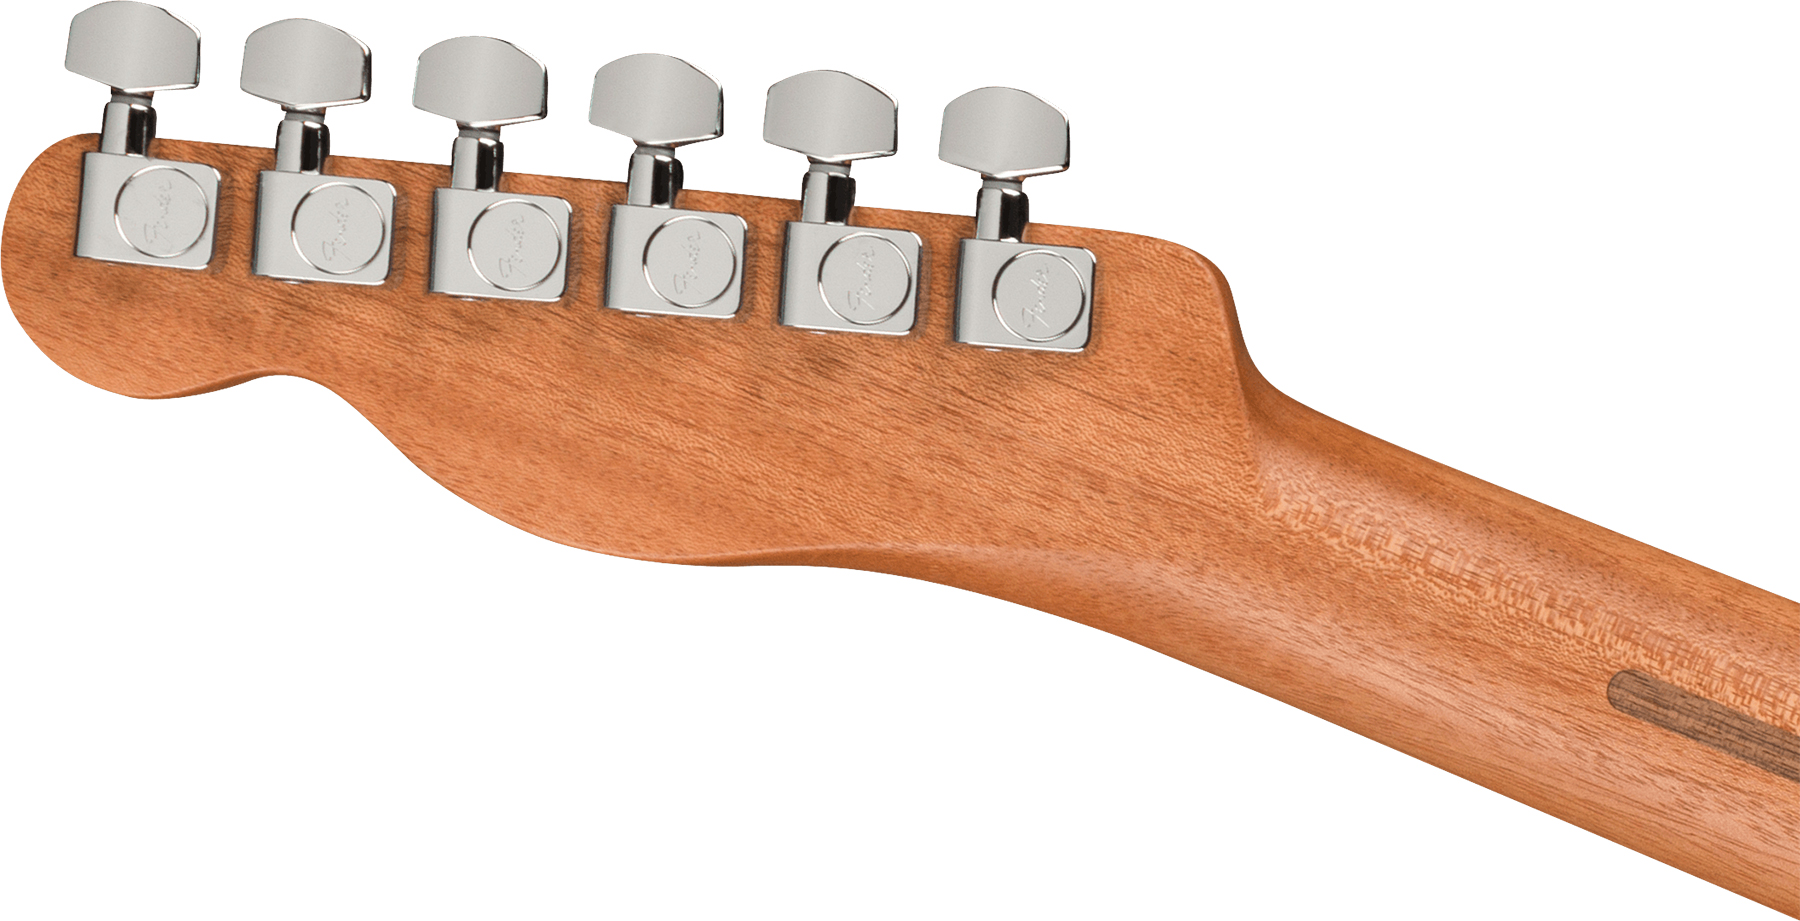 Fender Acoustasonic Tele Player Mex Epicea Acajou Rw - Arctic White - Elektroakustische Gitarre - Variation 3